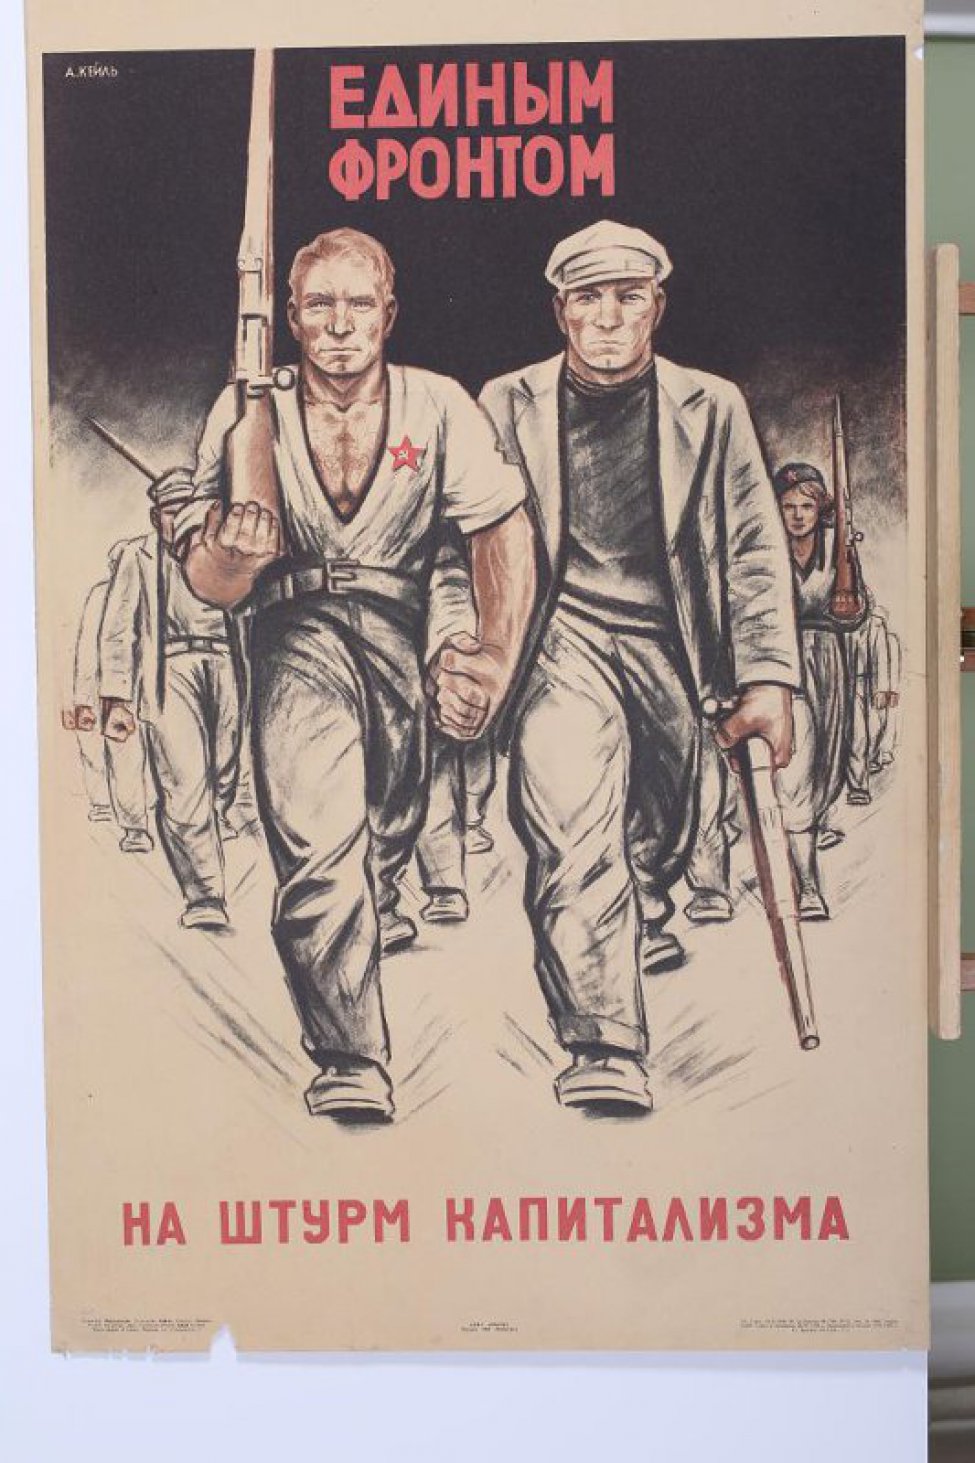 Изображены двое рабочих, идущих рука об руку. У одного в руке винтовка и растегнутая рубашка с красной звездой. Второй в шапке и пиджаке держит рукой отбойный молоток. На втором плане идущие рядами рабочие.